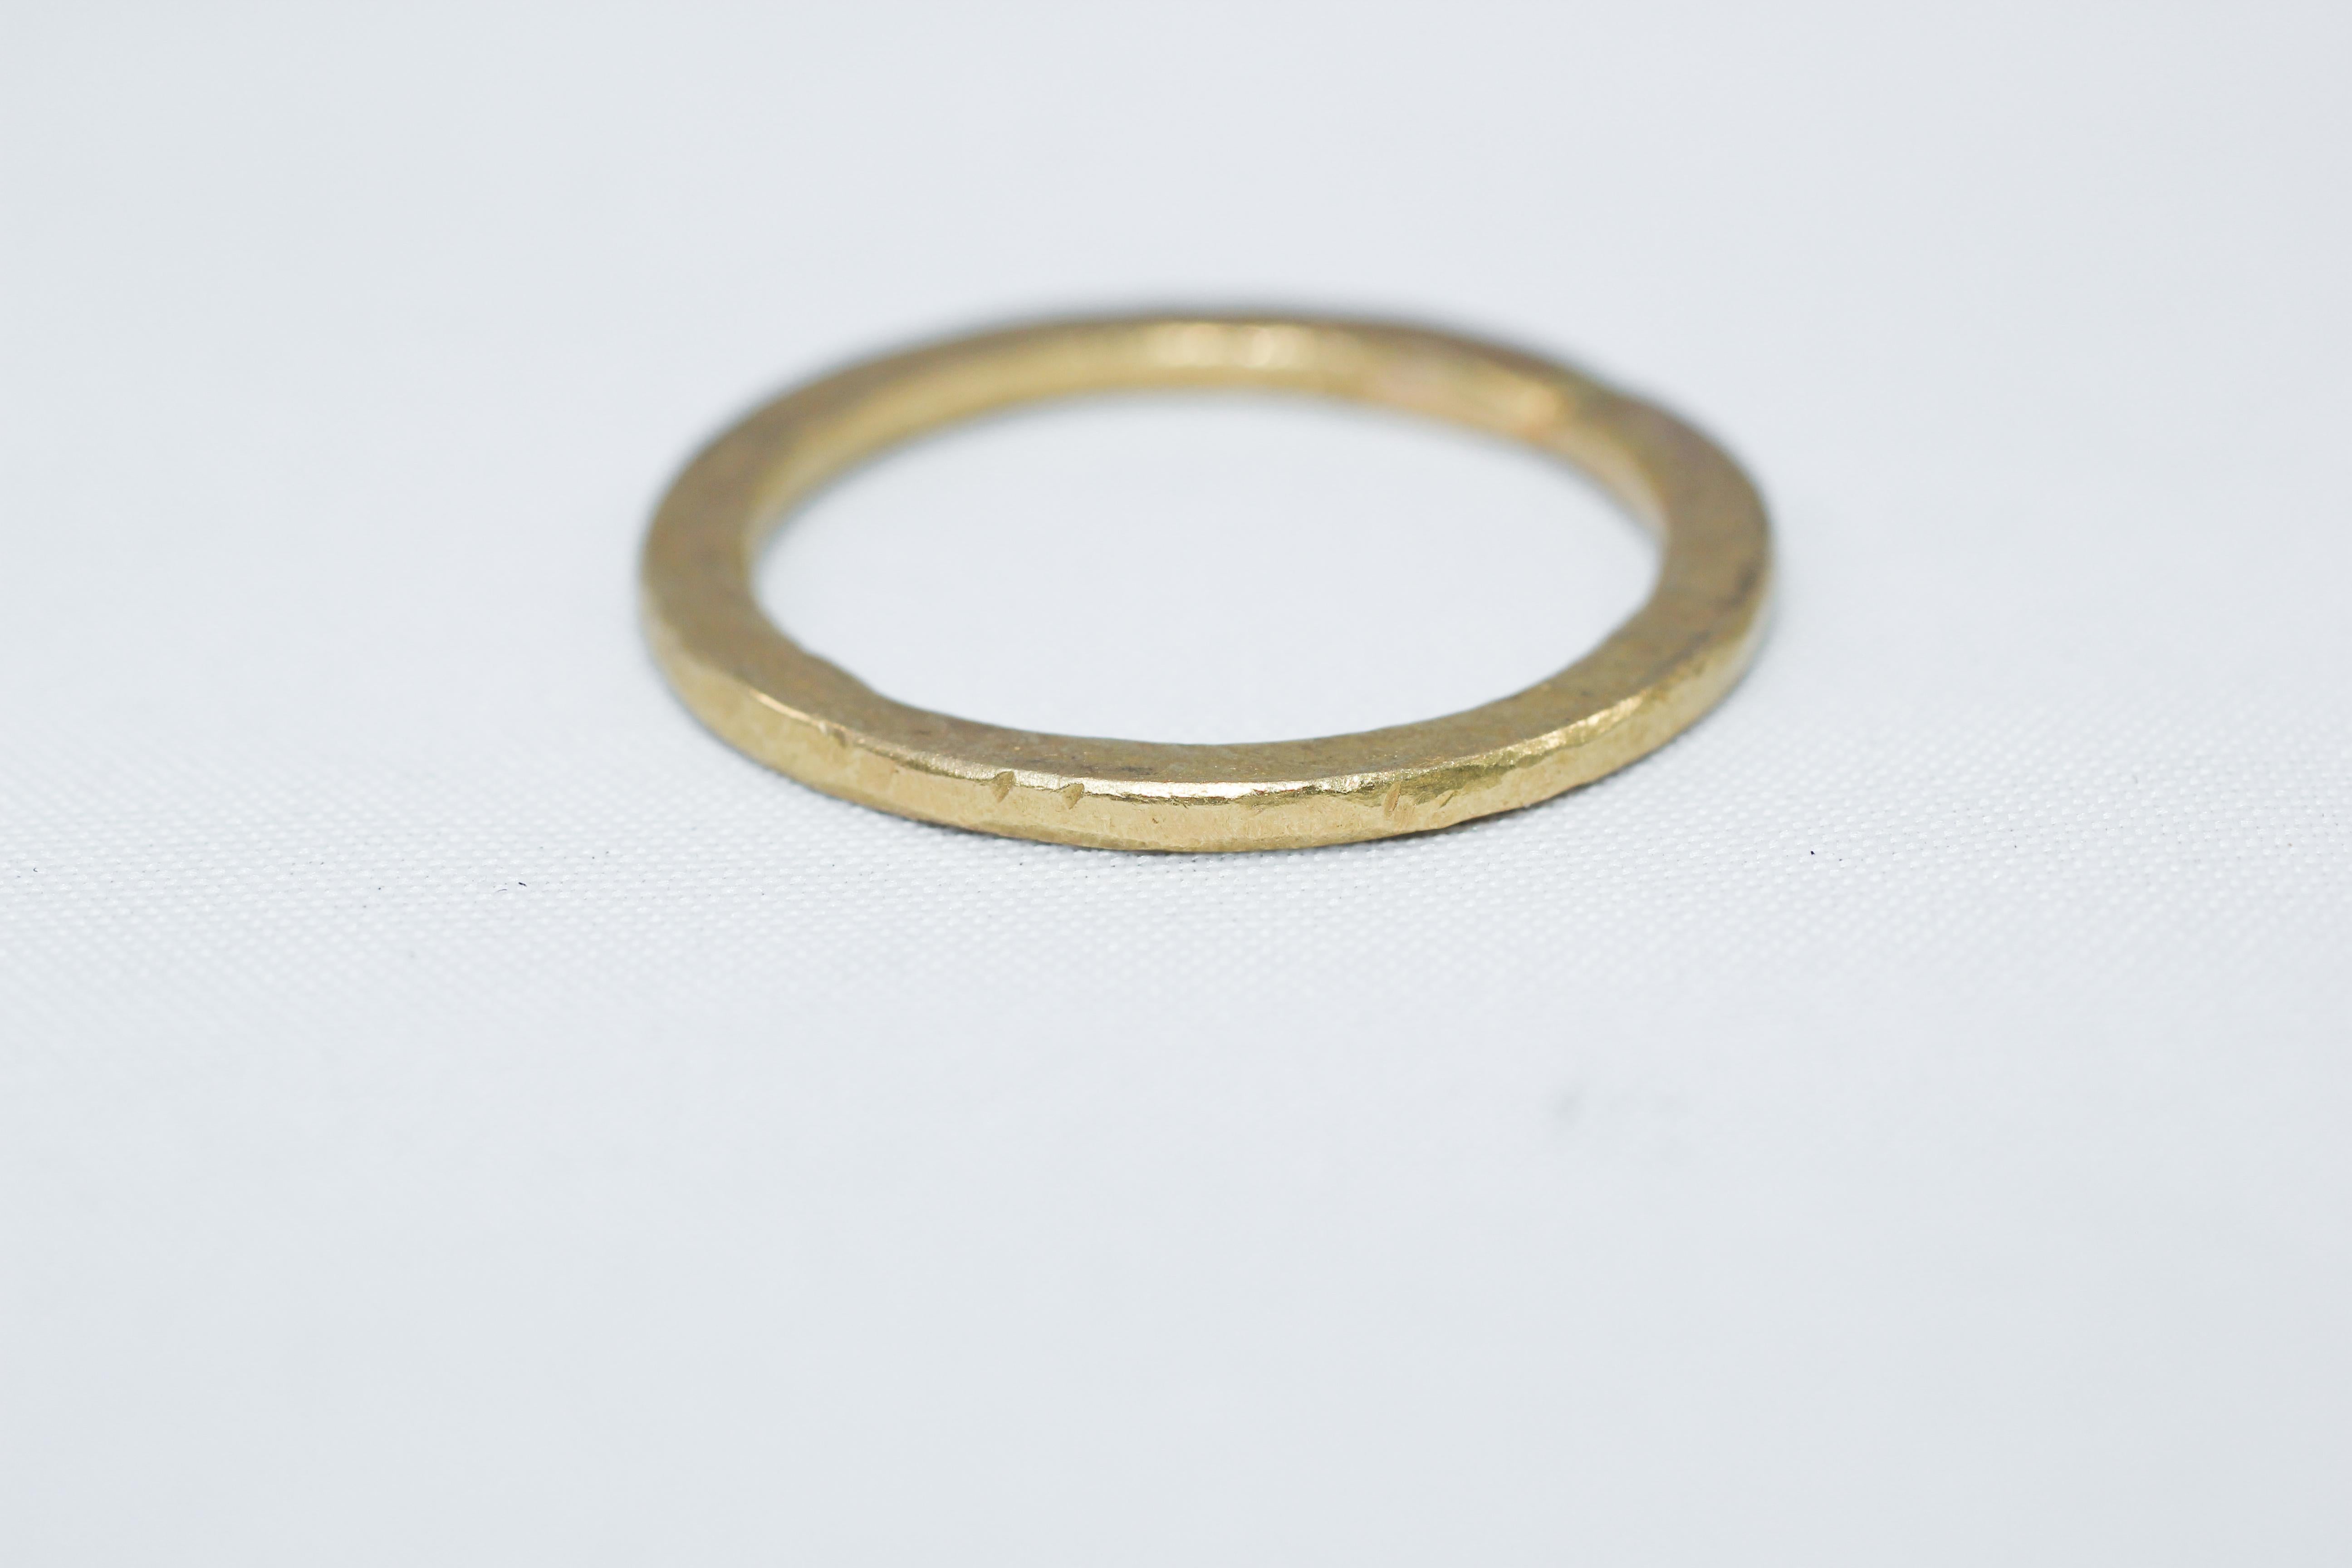 21k gold ring price